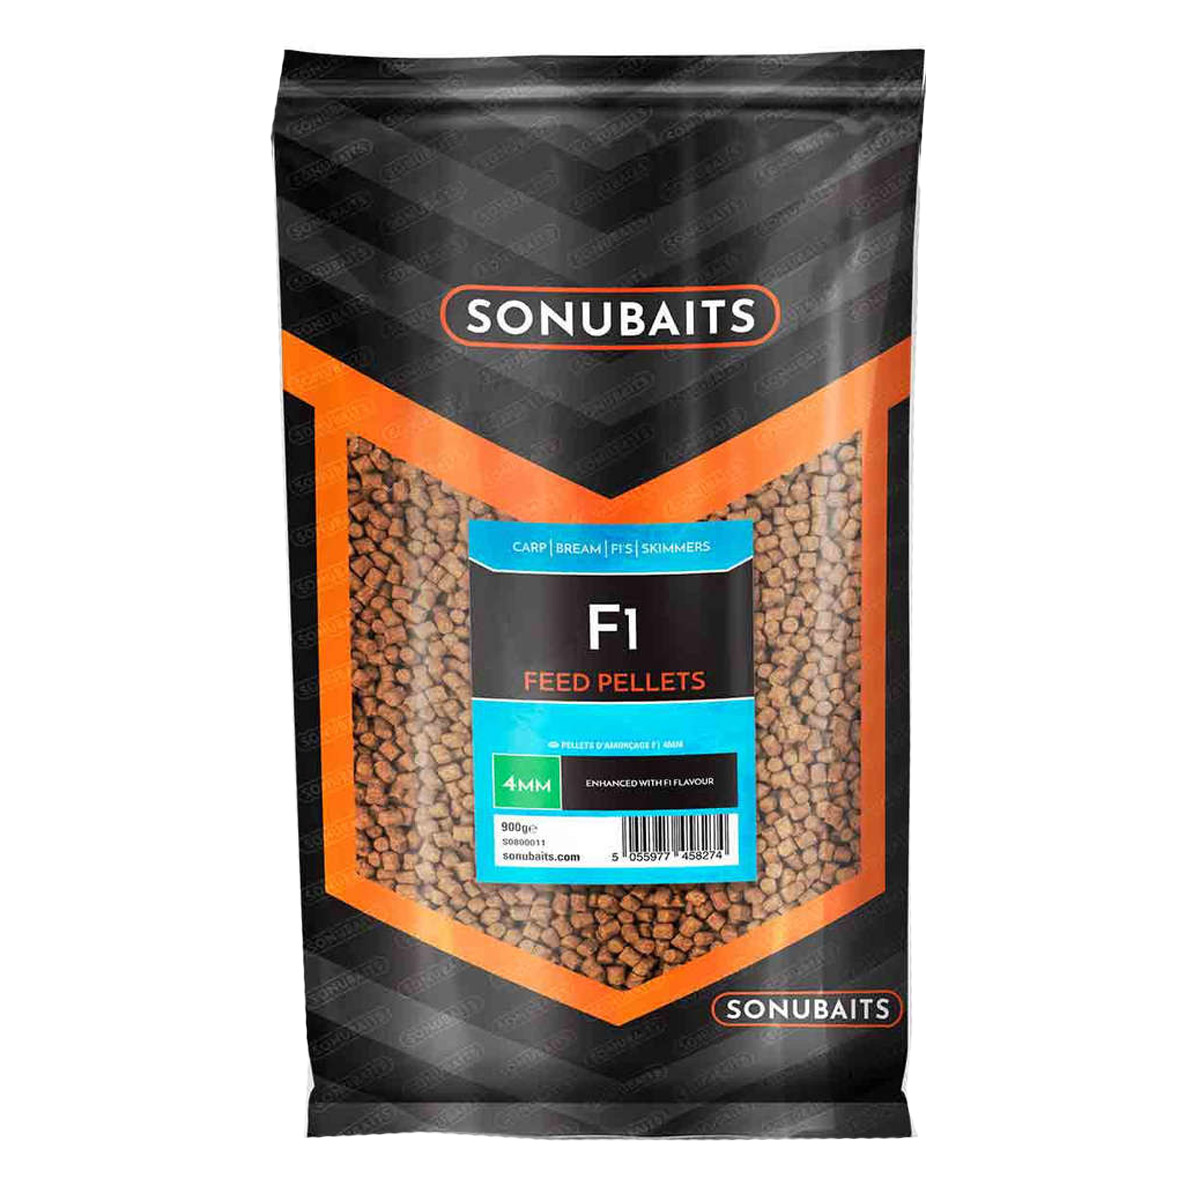 Sonubaits F1 feed Pellets